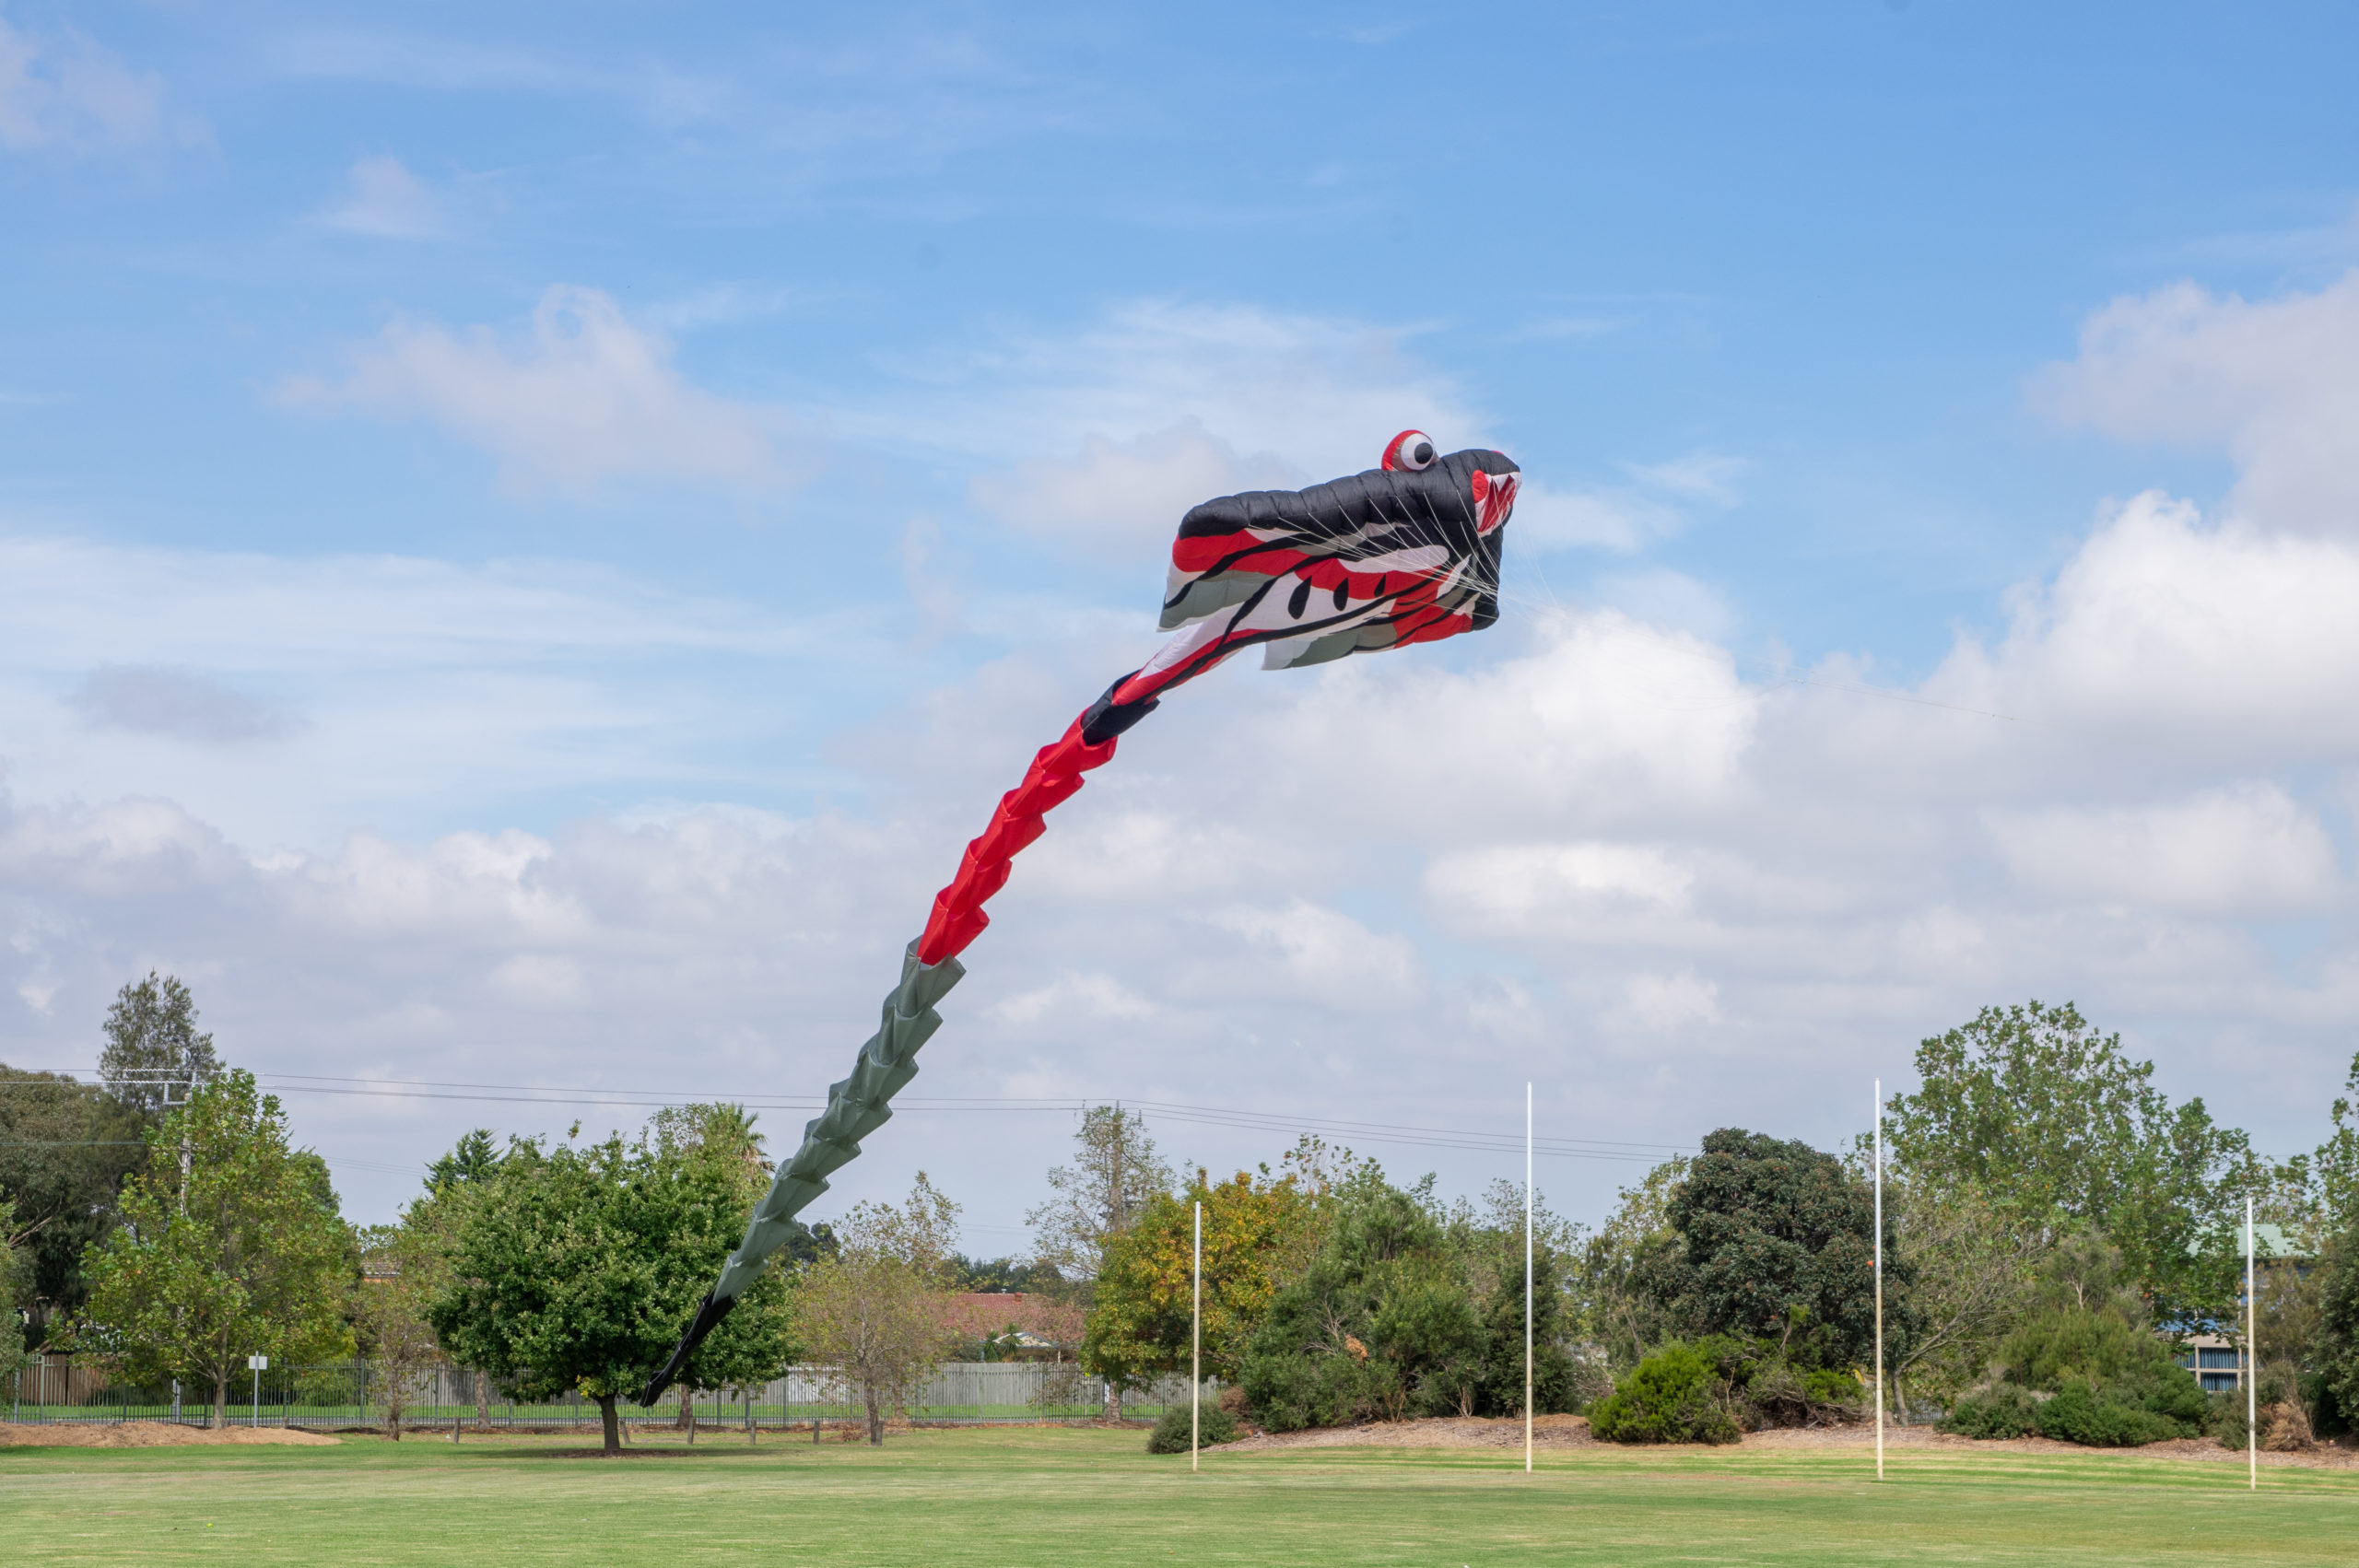 Giant kite flying over Beaconhills, Pakenham.